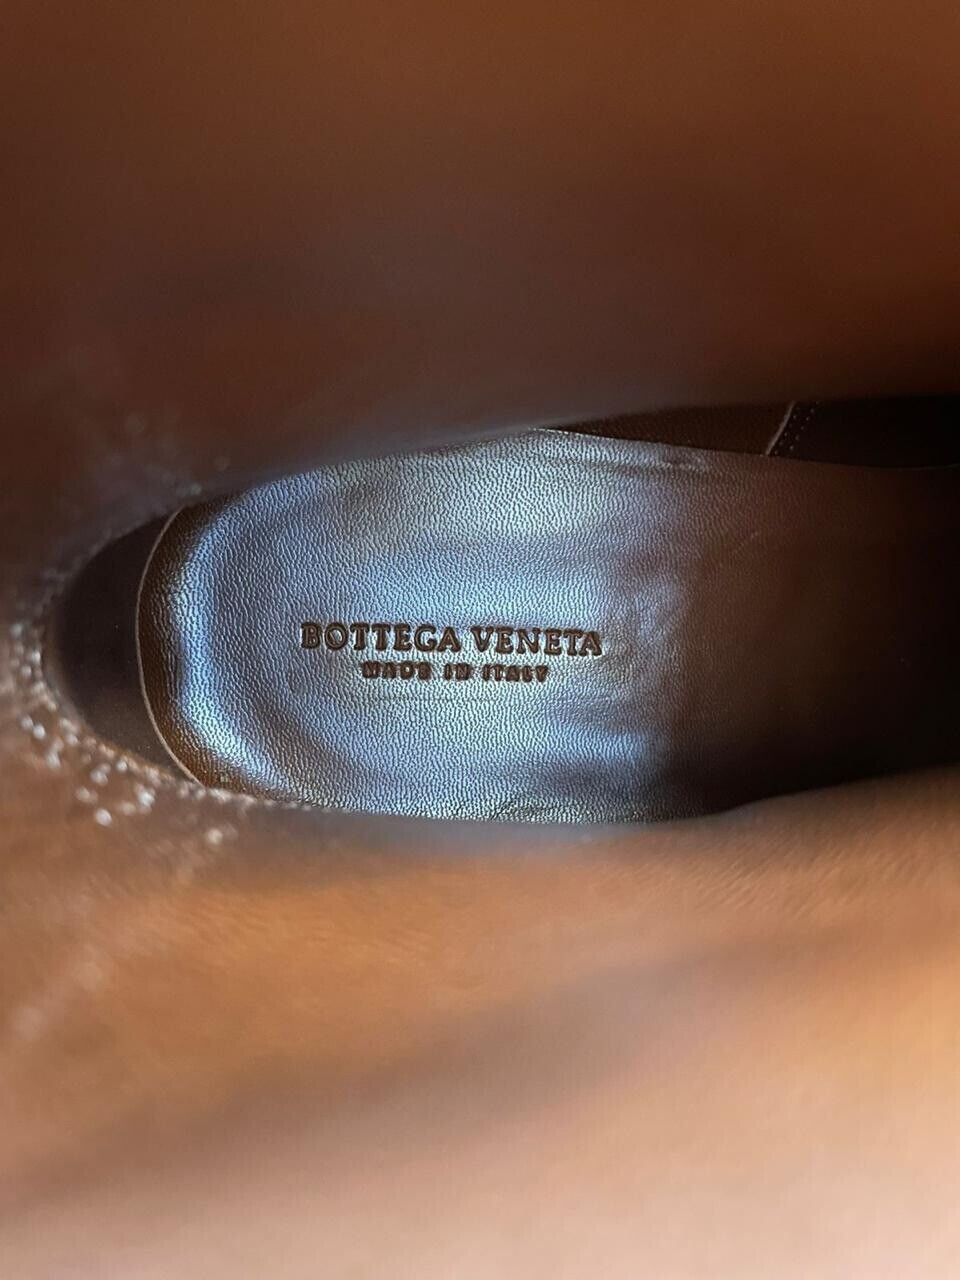 Черные ботильоны Bottega Veneta из телячьей кожи 9, США (42 евро), NIB 1150 долларов США 532836 